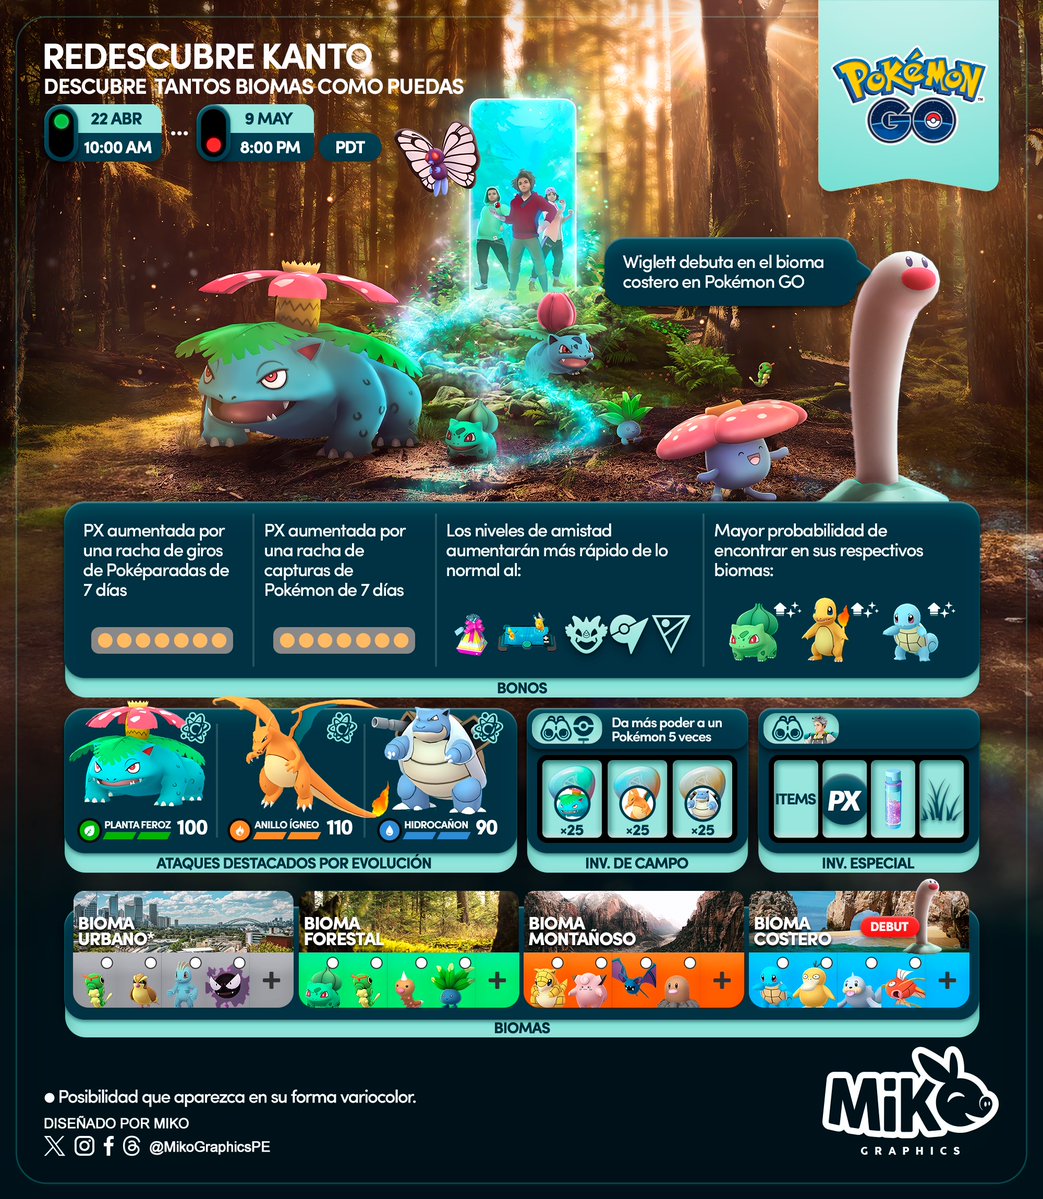 🇺🇸
Rediscover Kanto
Special Research + Field Research task

#PokemonGO #PokemonGOApp #MikoGraphics #G2G

🇪🇸
Redescubre Kanto
Investigación Espeical + Investigación de campo

#PokemonGO #PokemonGOApp #MikoGraphics #G2G